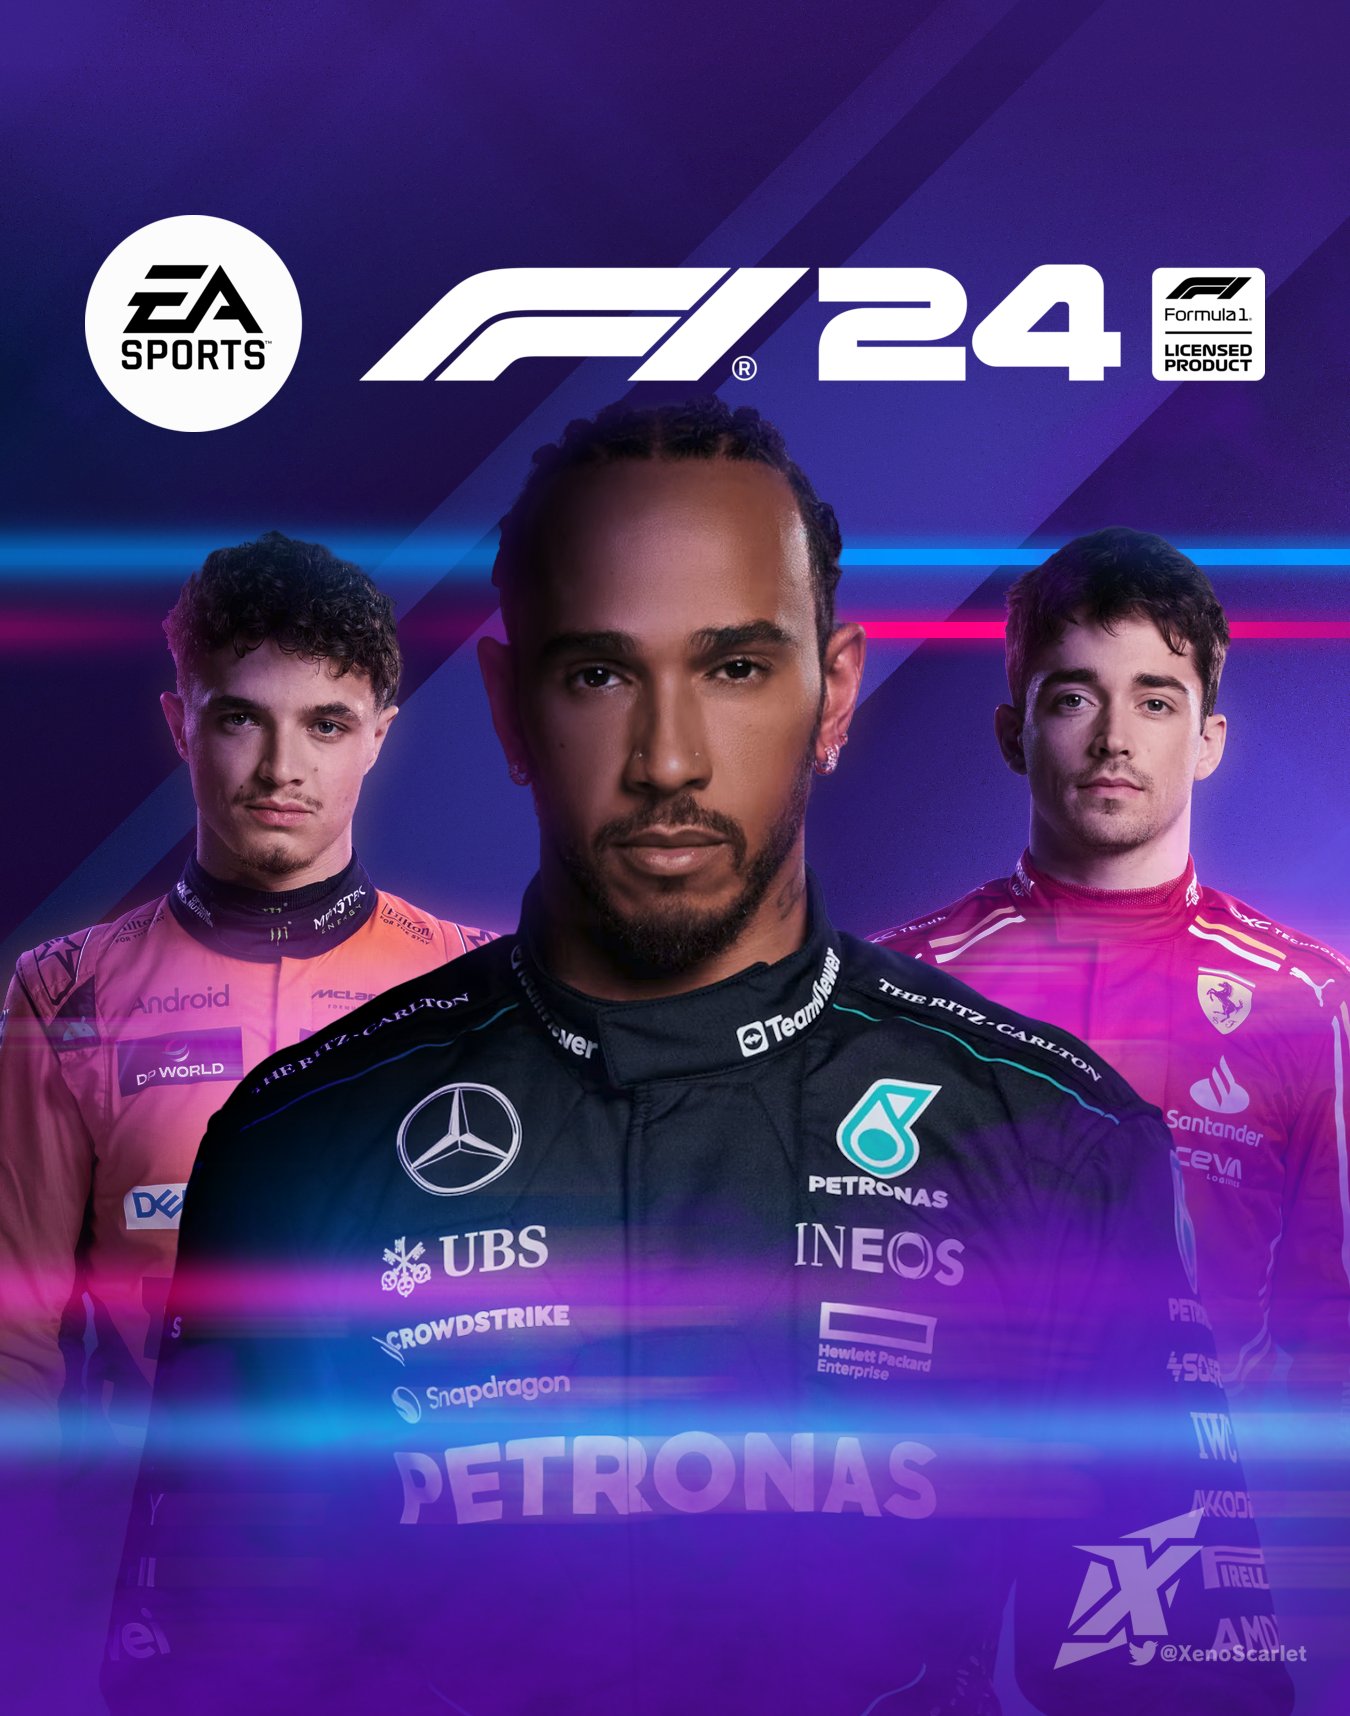 خرید سی دی کی اشتراکی بازی F1 24 Champions Edition